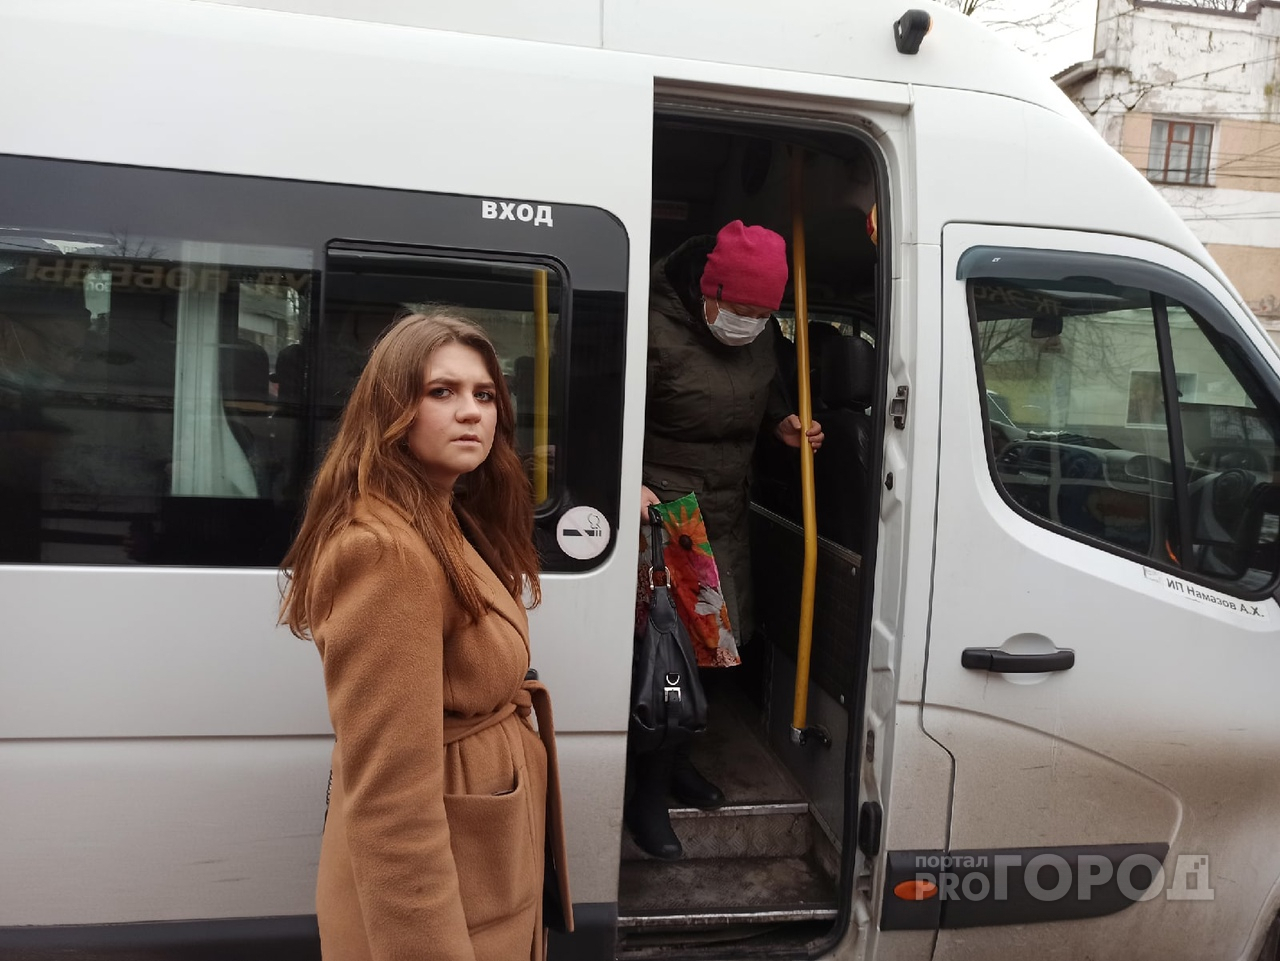 В Ярославле вирусы будут убивать прямо в автобусах: ноу-хау от транспортников